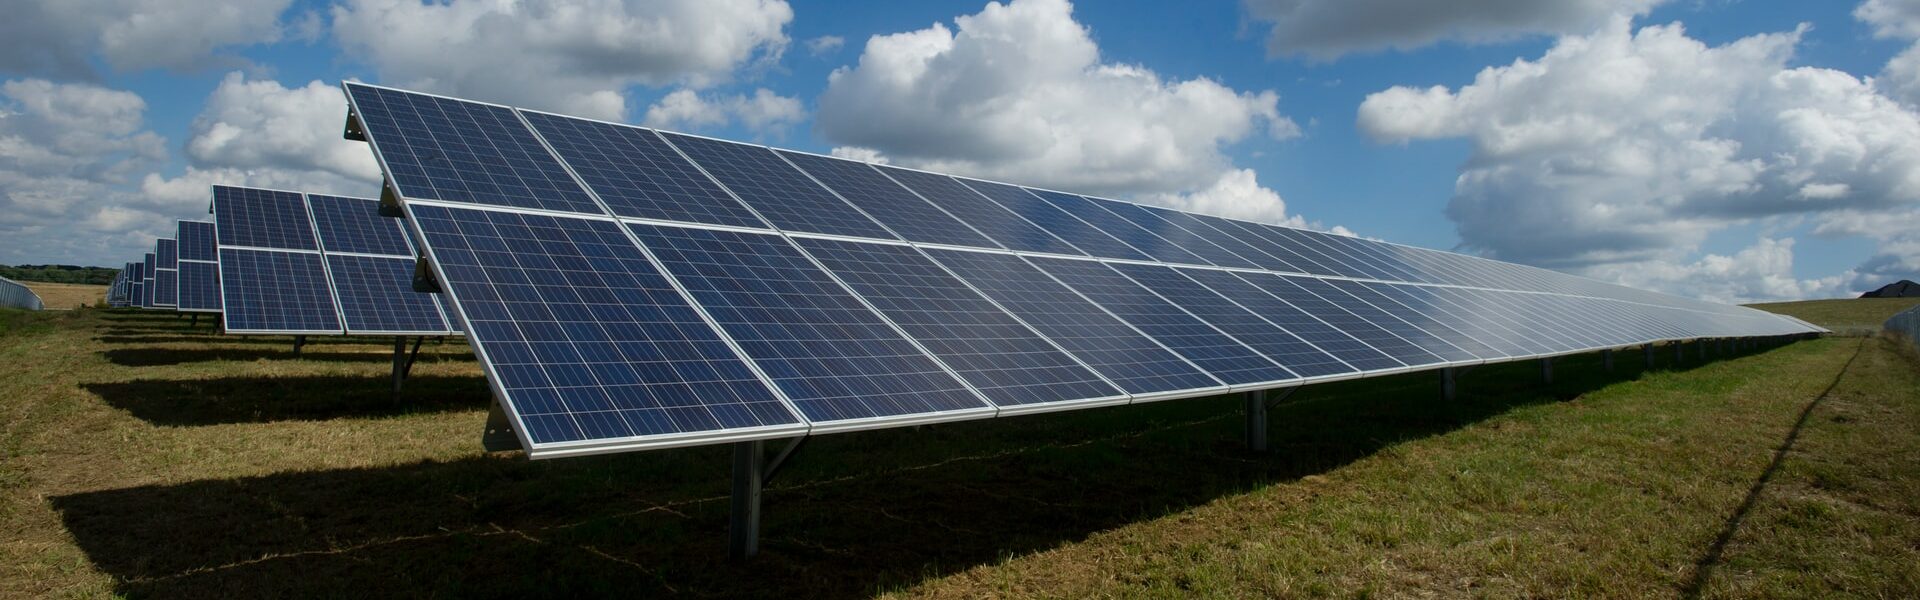 Placas Solares - Franquia de energia solar: 8 coisas que você precisa saber sobre esse investimento